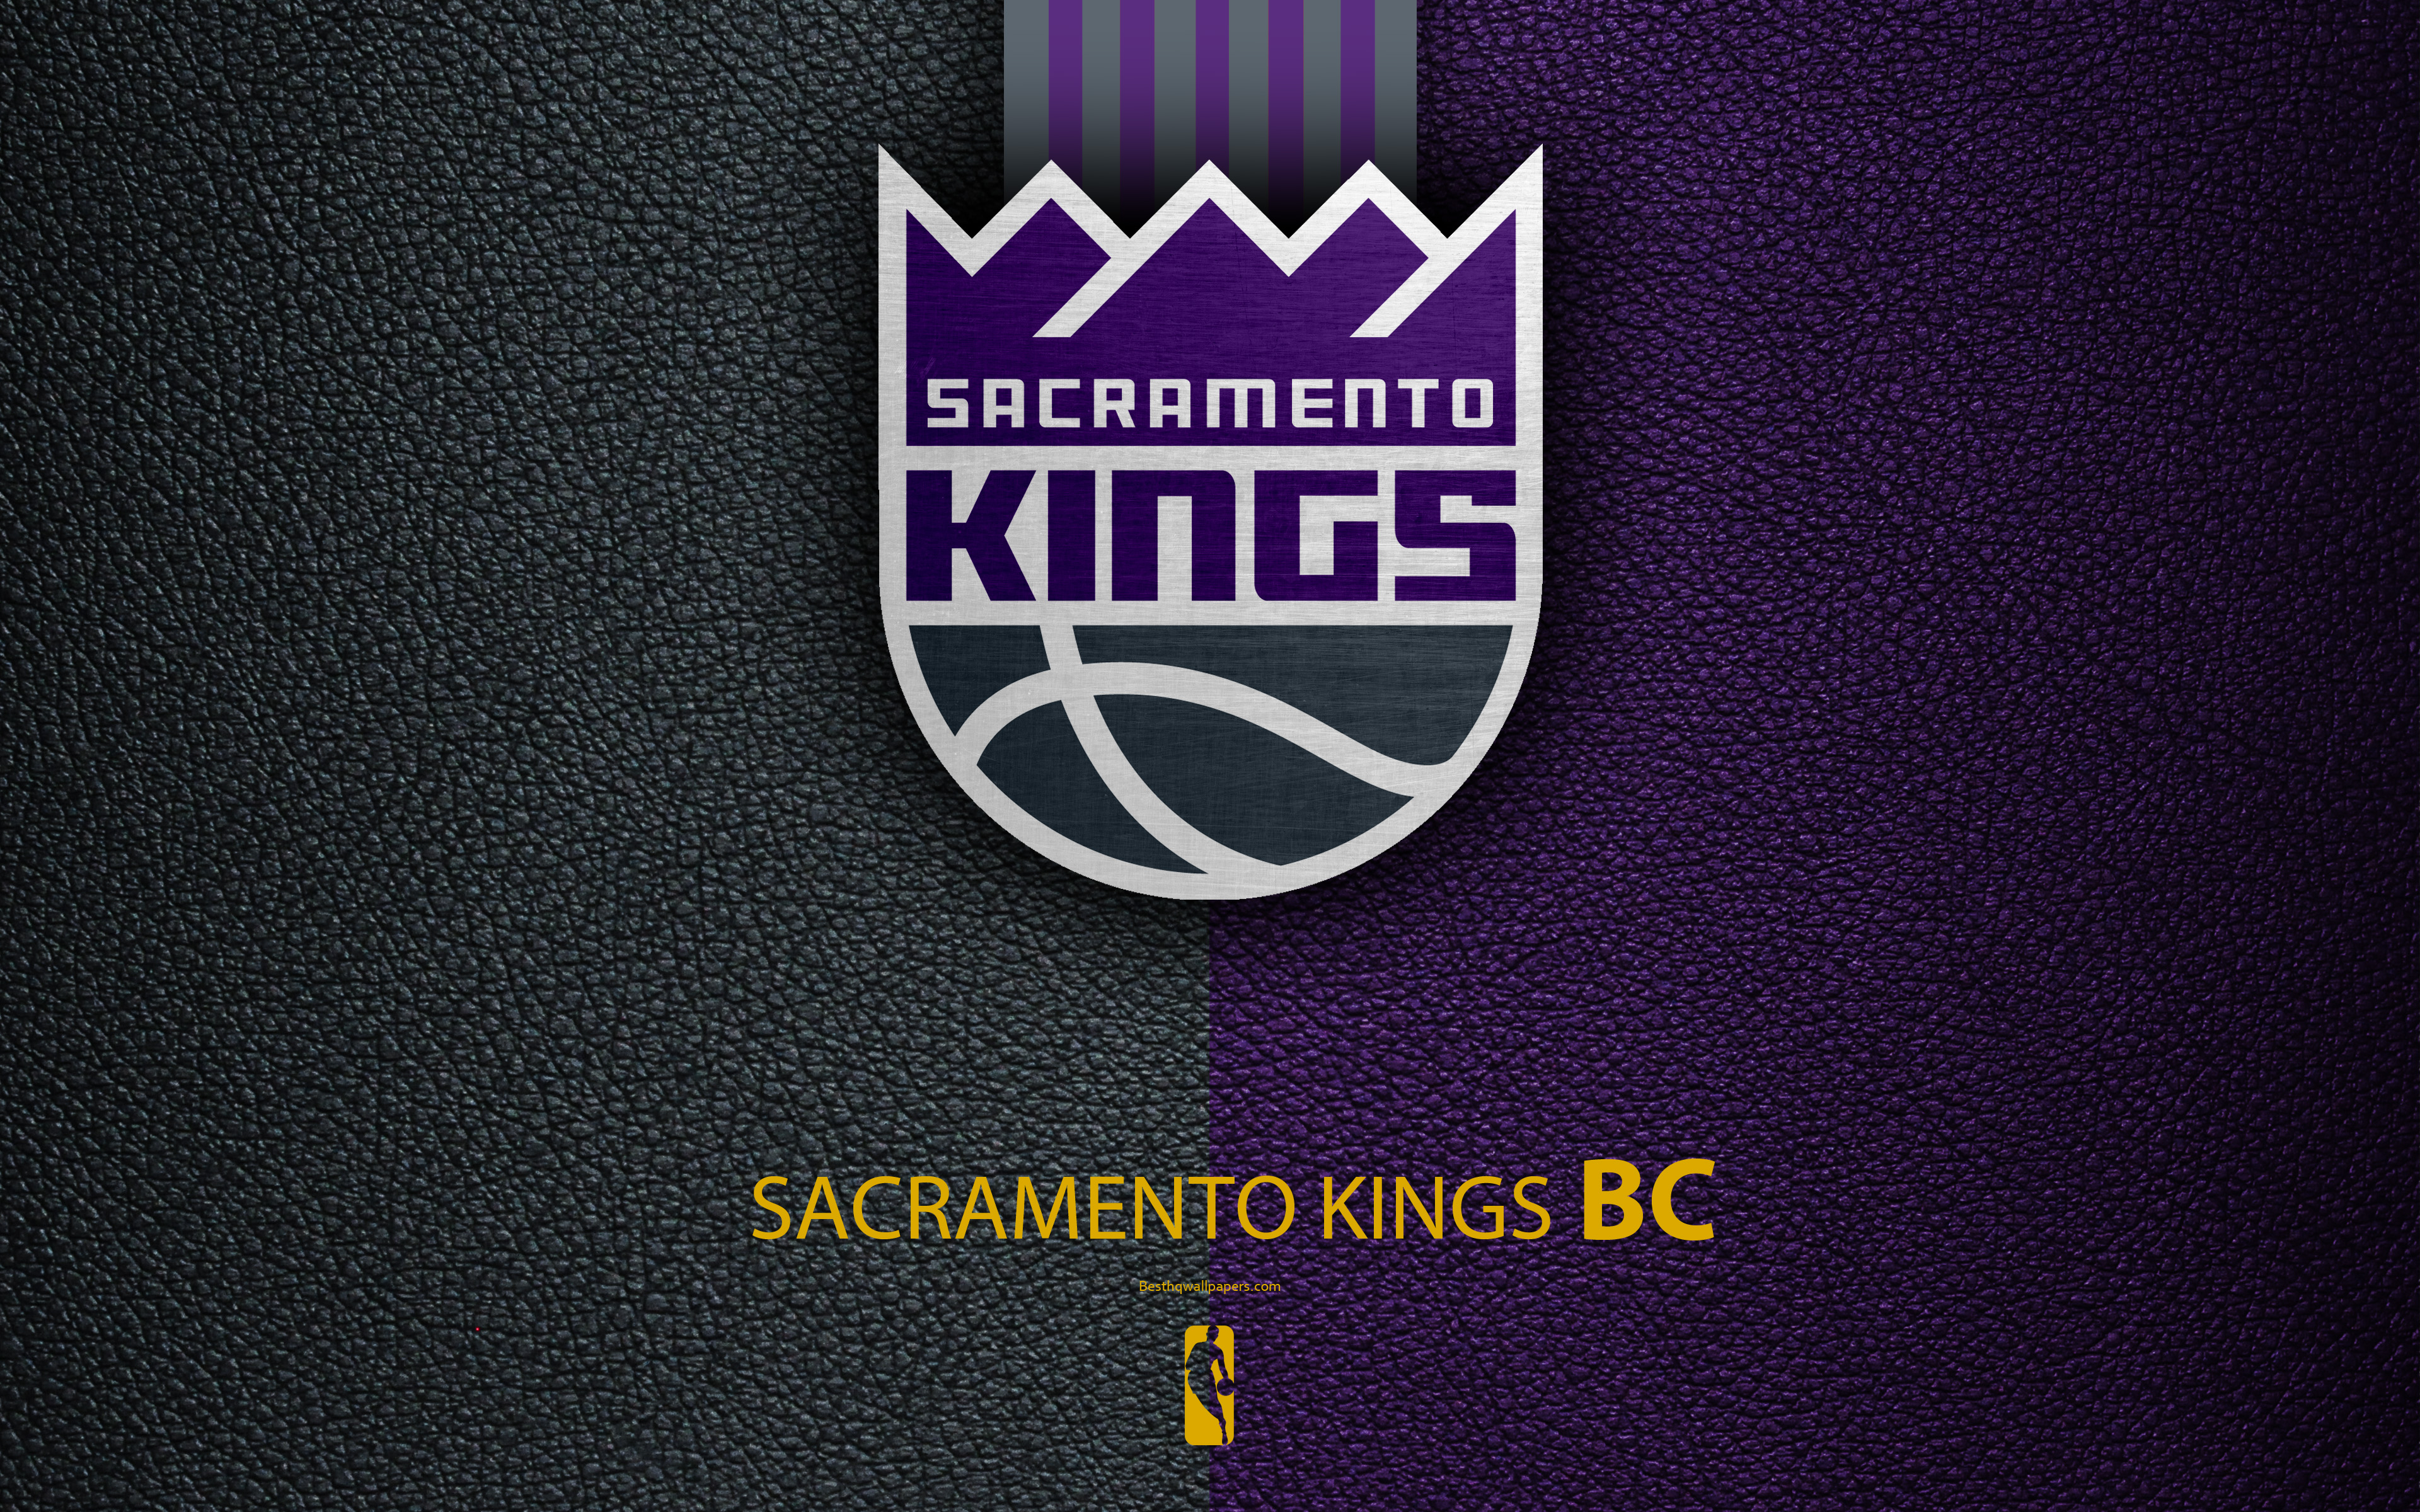 Sacramento Kings Ferrell Wallpaper on Behance